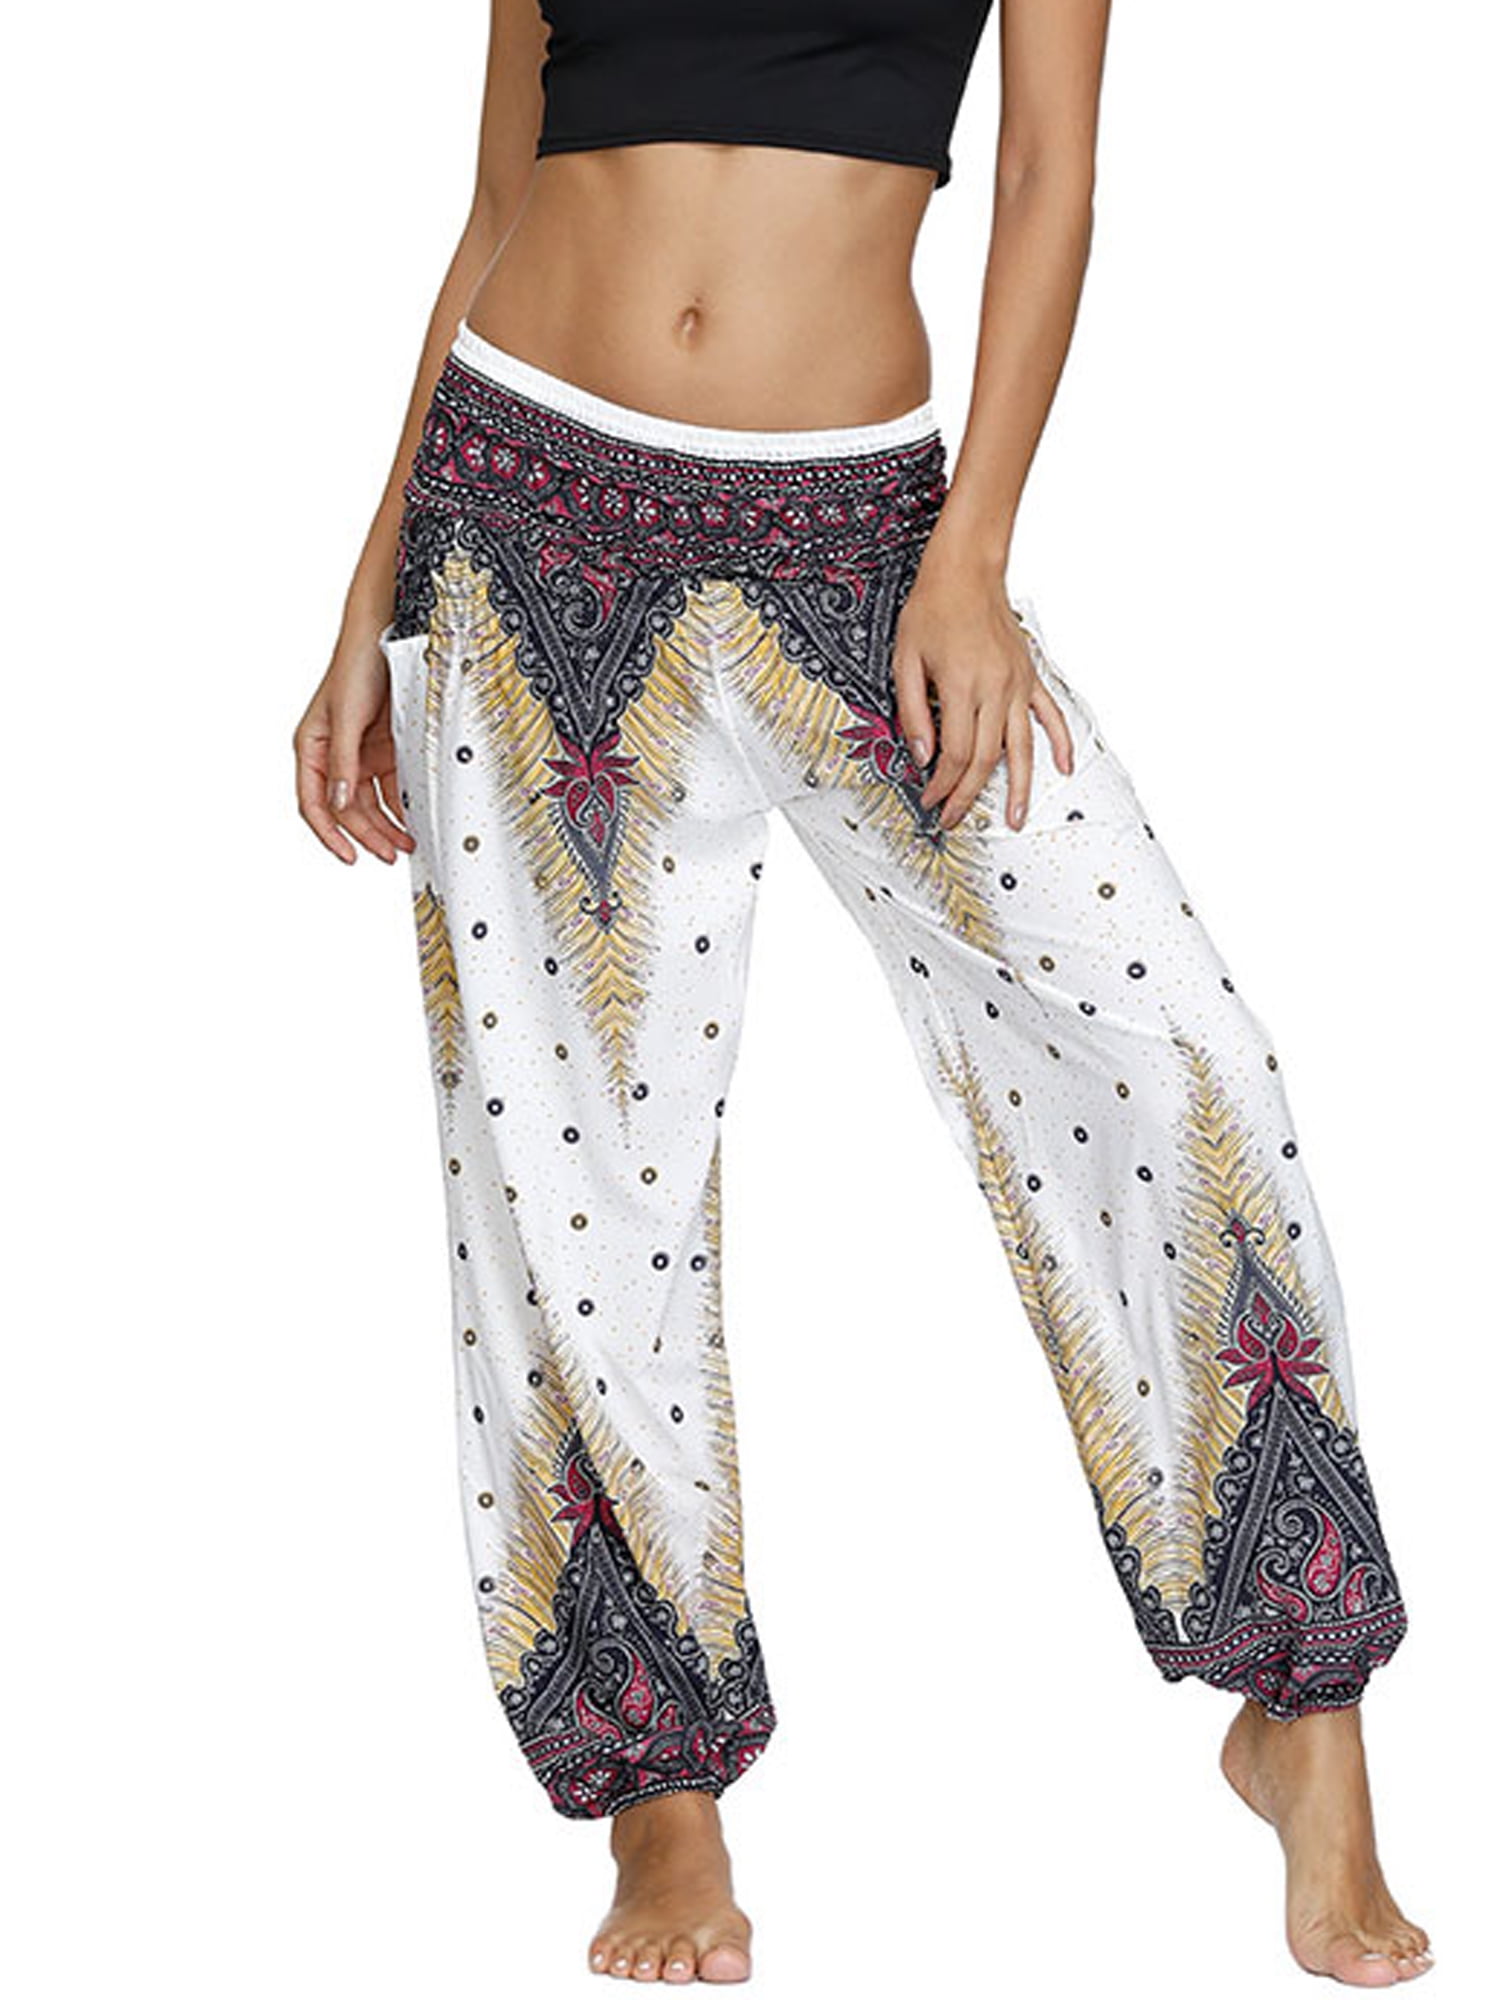 LALLC - Women's Harem Yoga Pants Casual Baggy Boho Floral Hippie ...